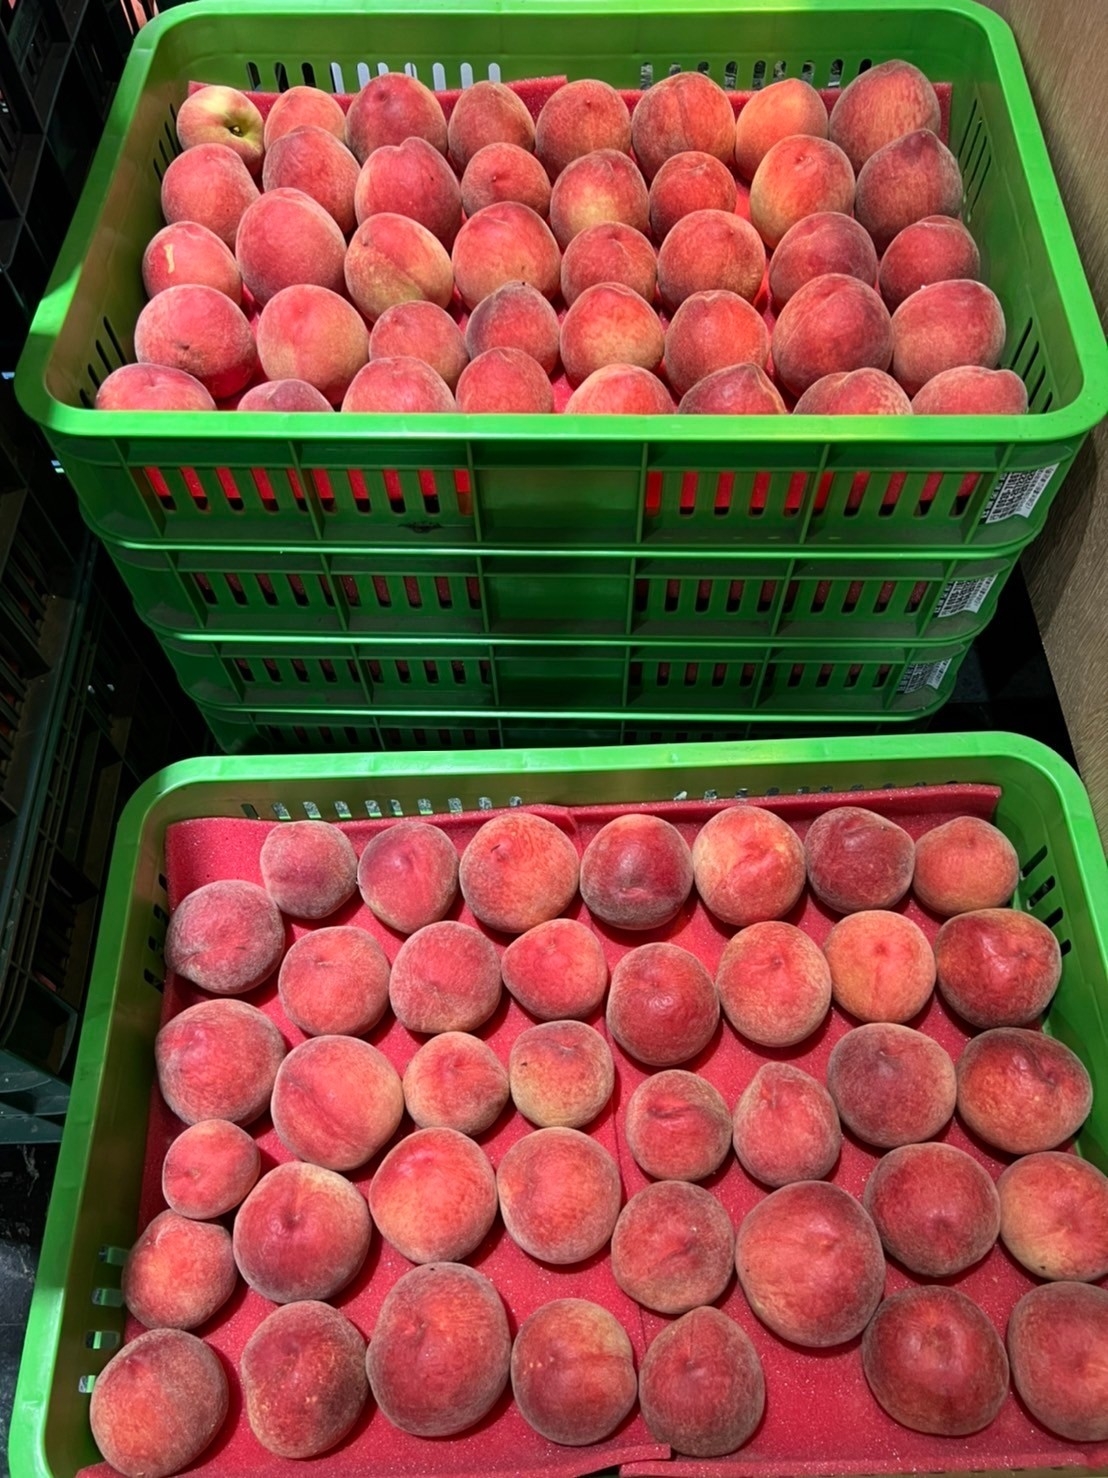 【歐吉商】摩天嶺熱帶水蜜桃禮盒10顆 2.2台斤